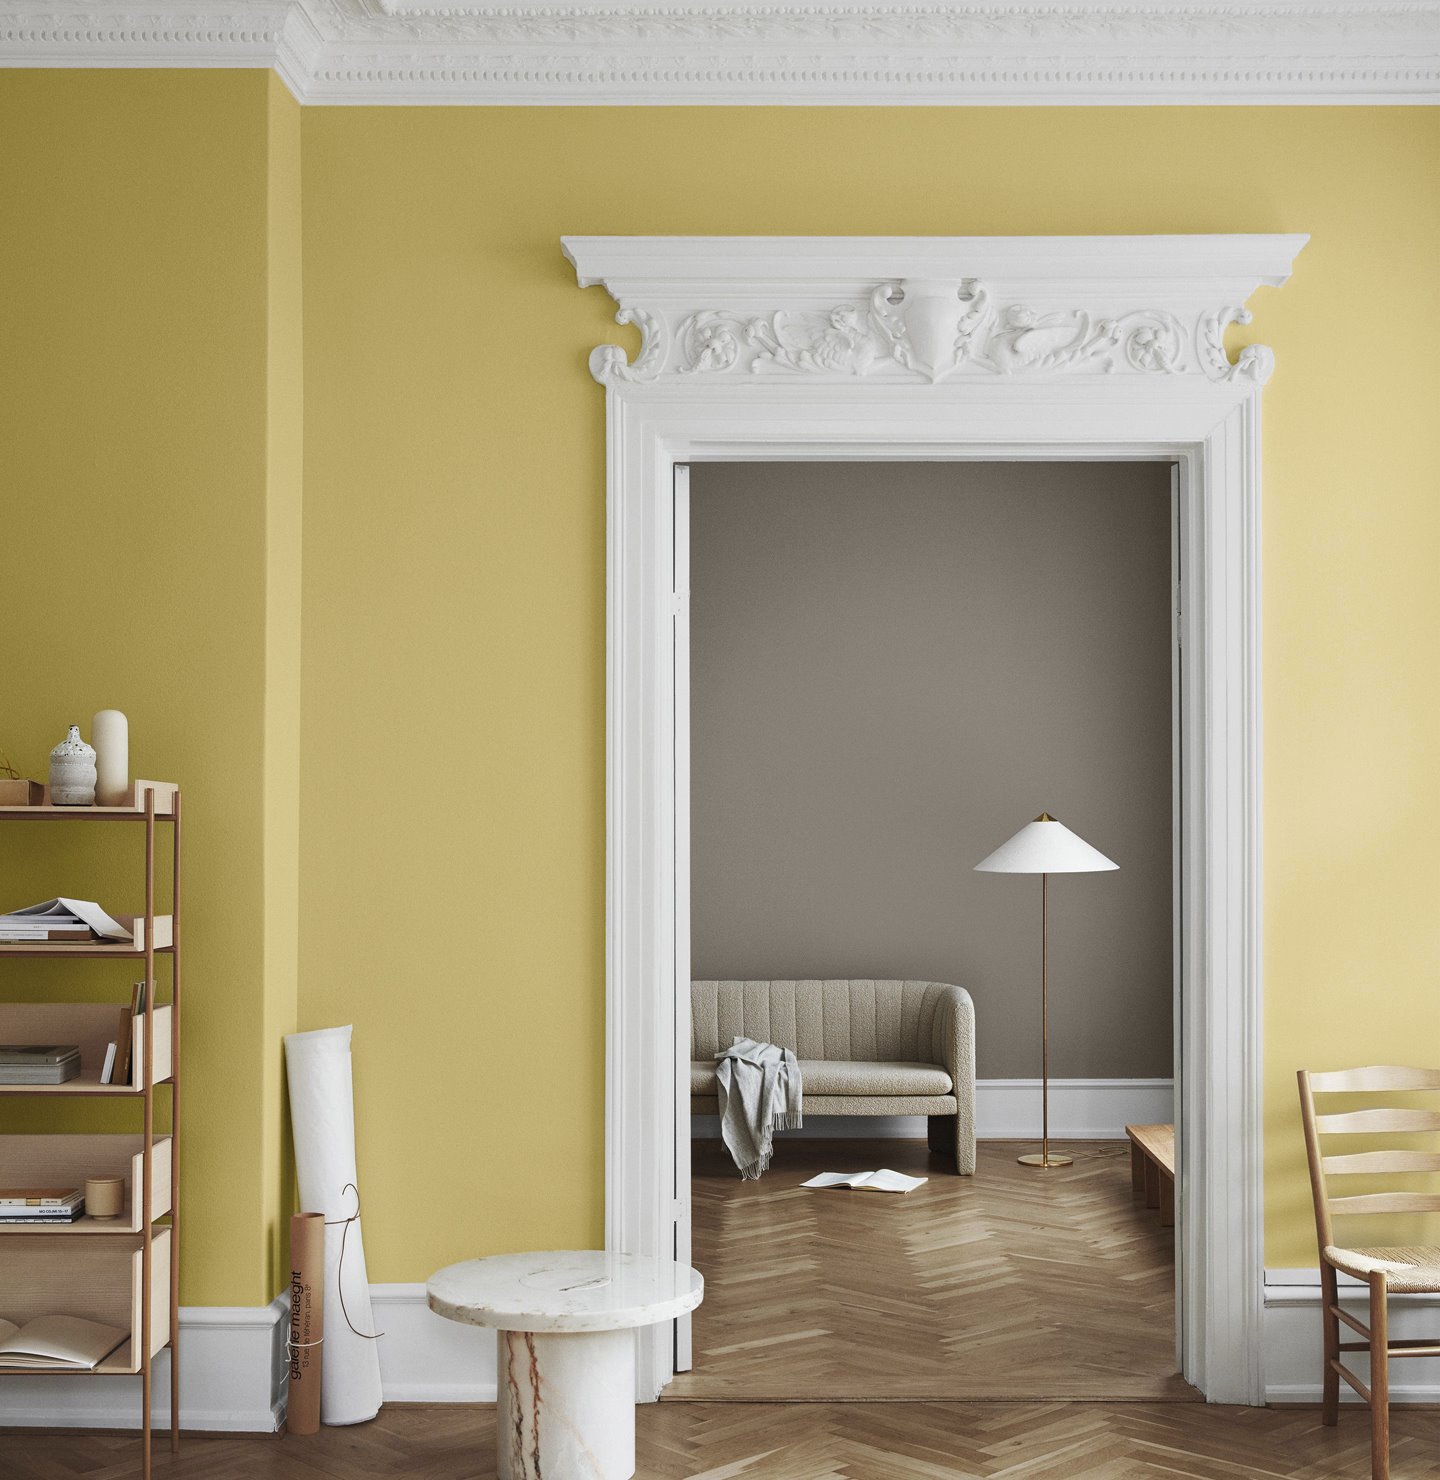 Salon con paredes pintadas en color amarillo y gris puerta con molduras